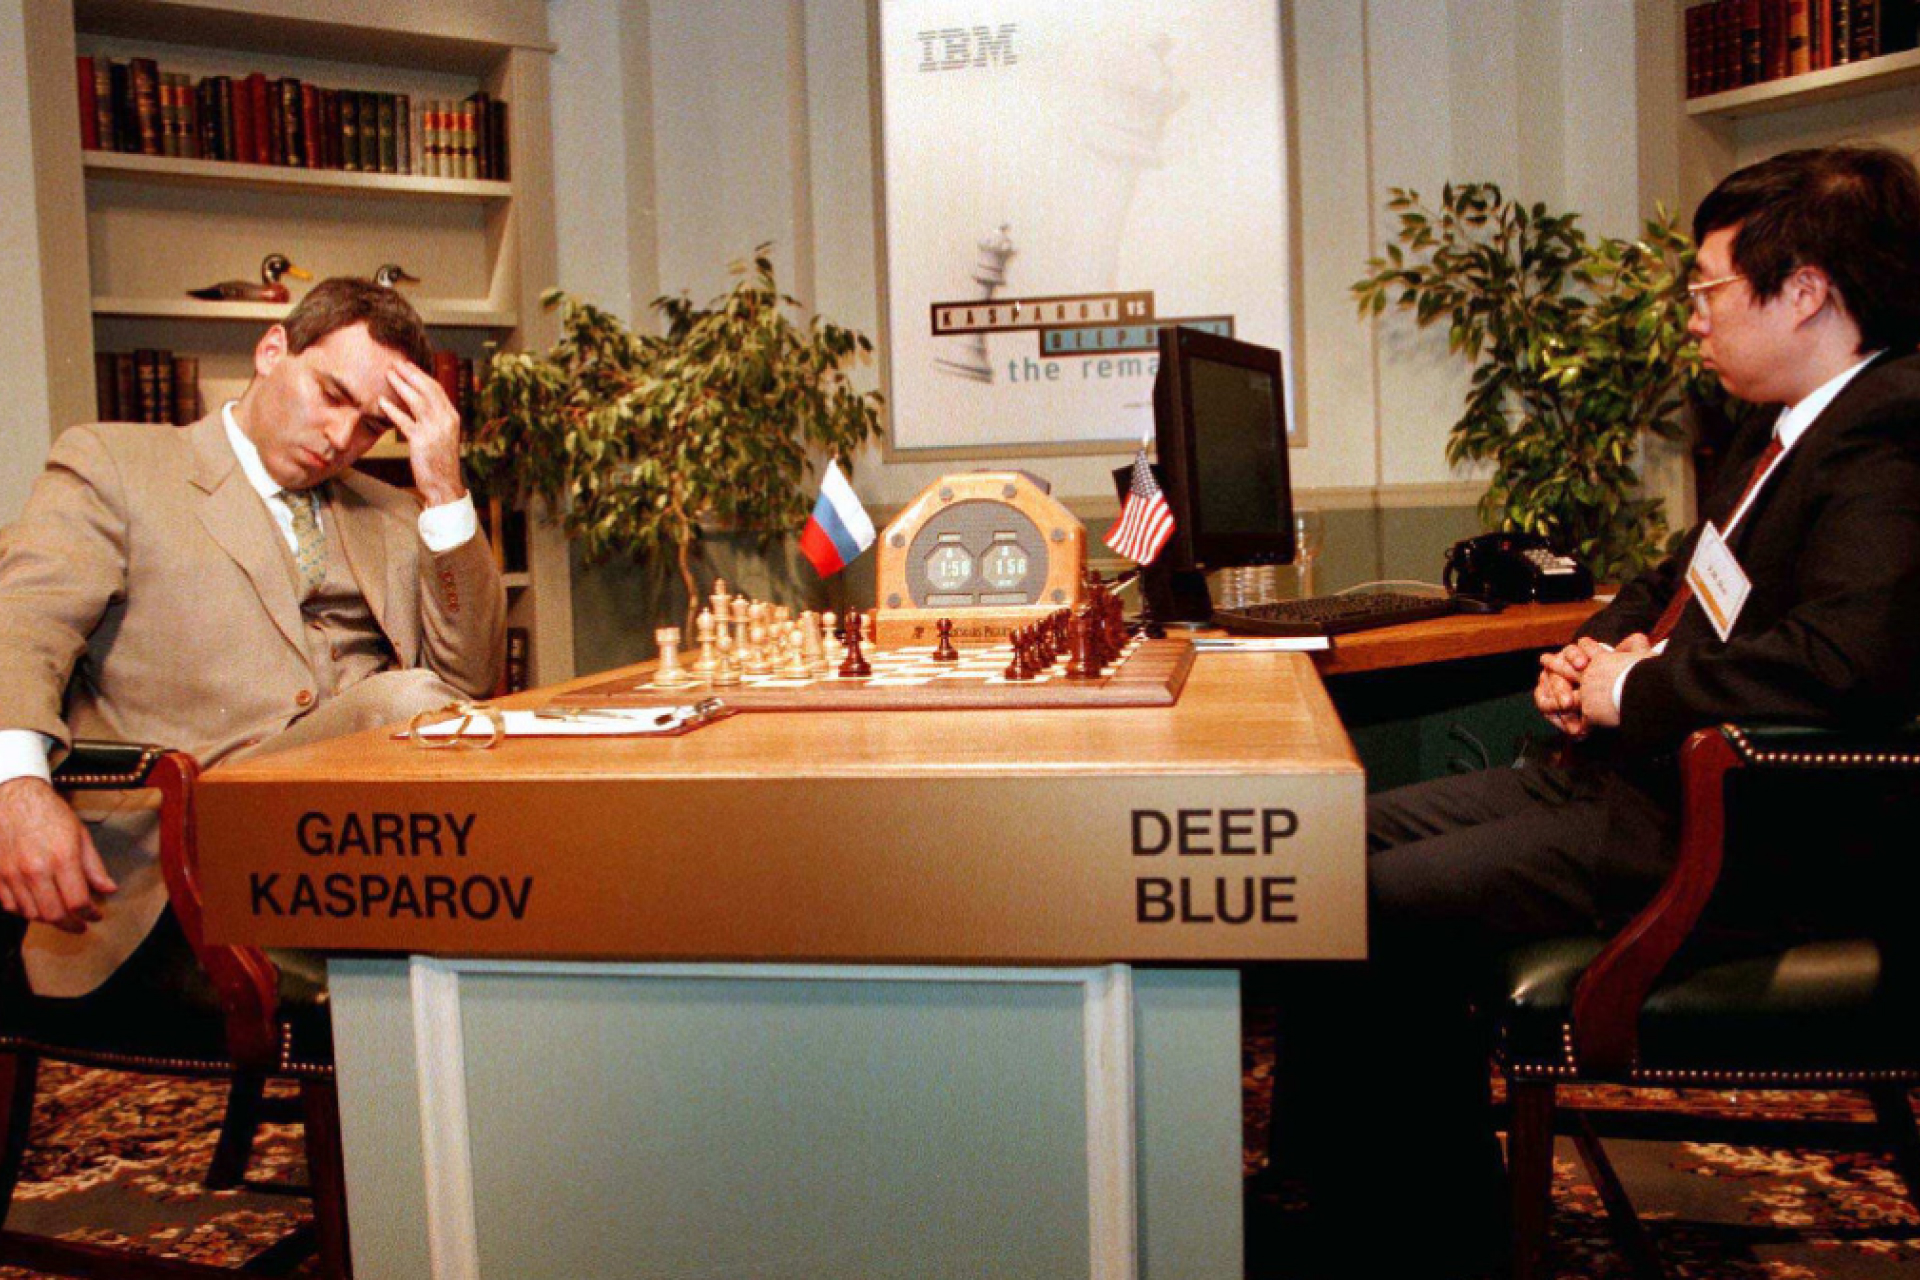 Гарри Каспаров против суперкомпьютера Deep Blue